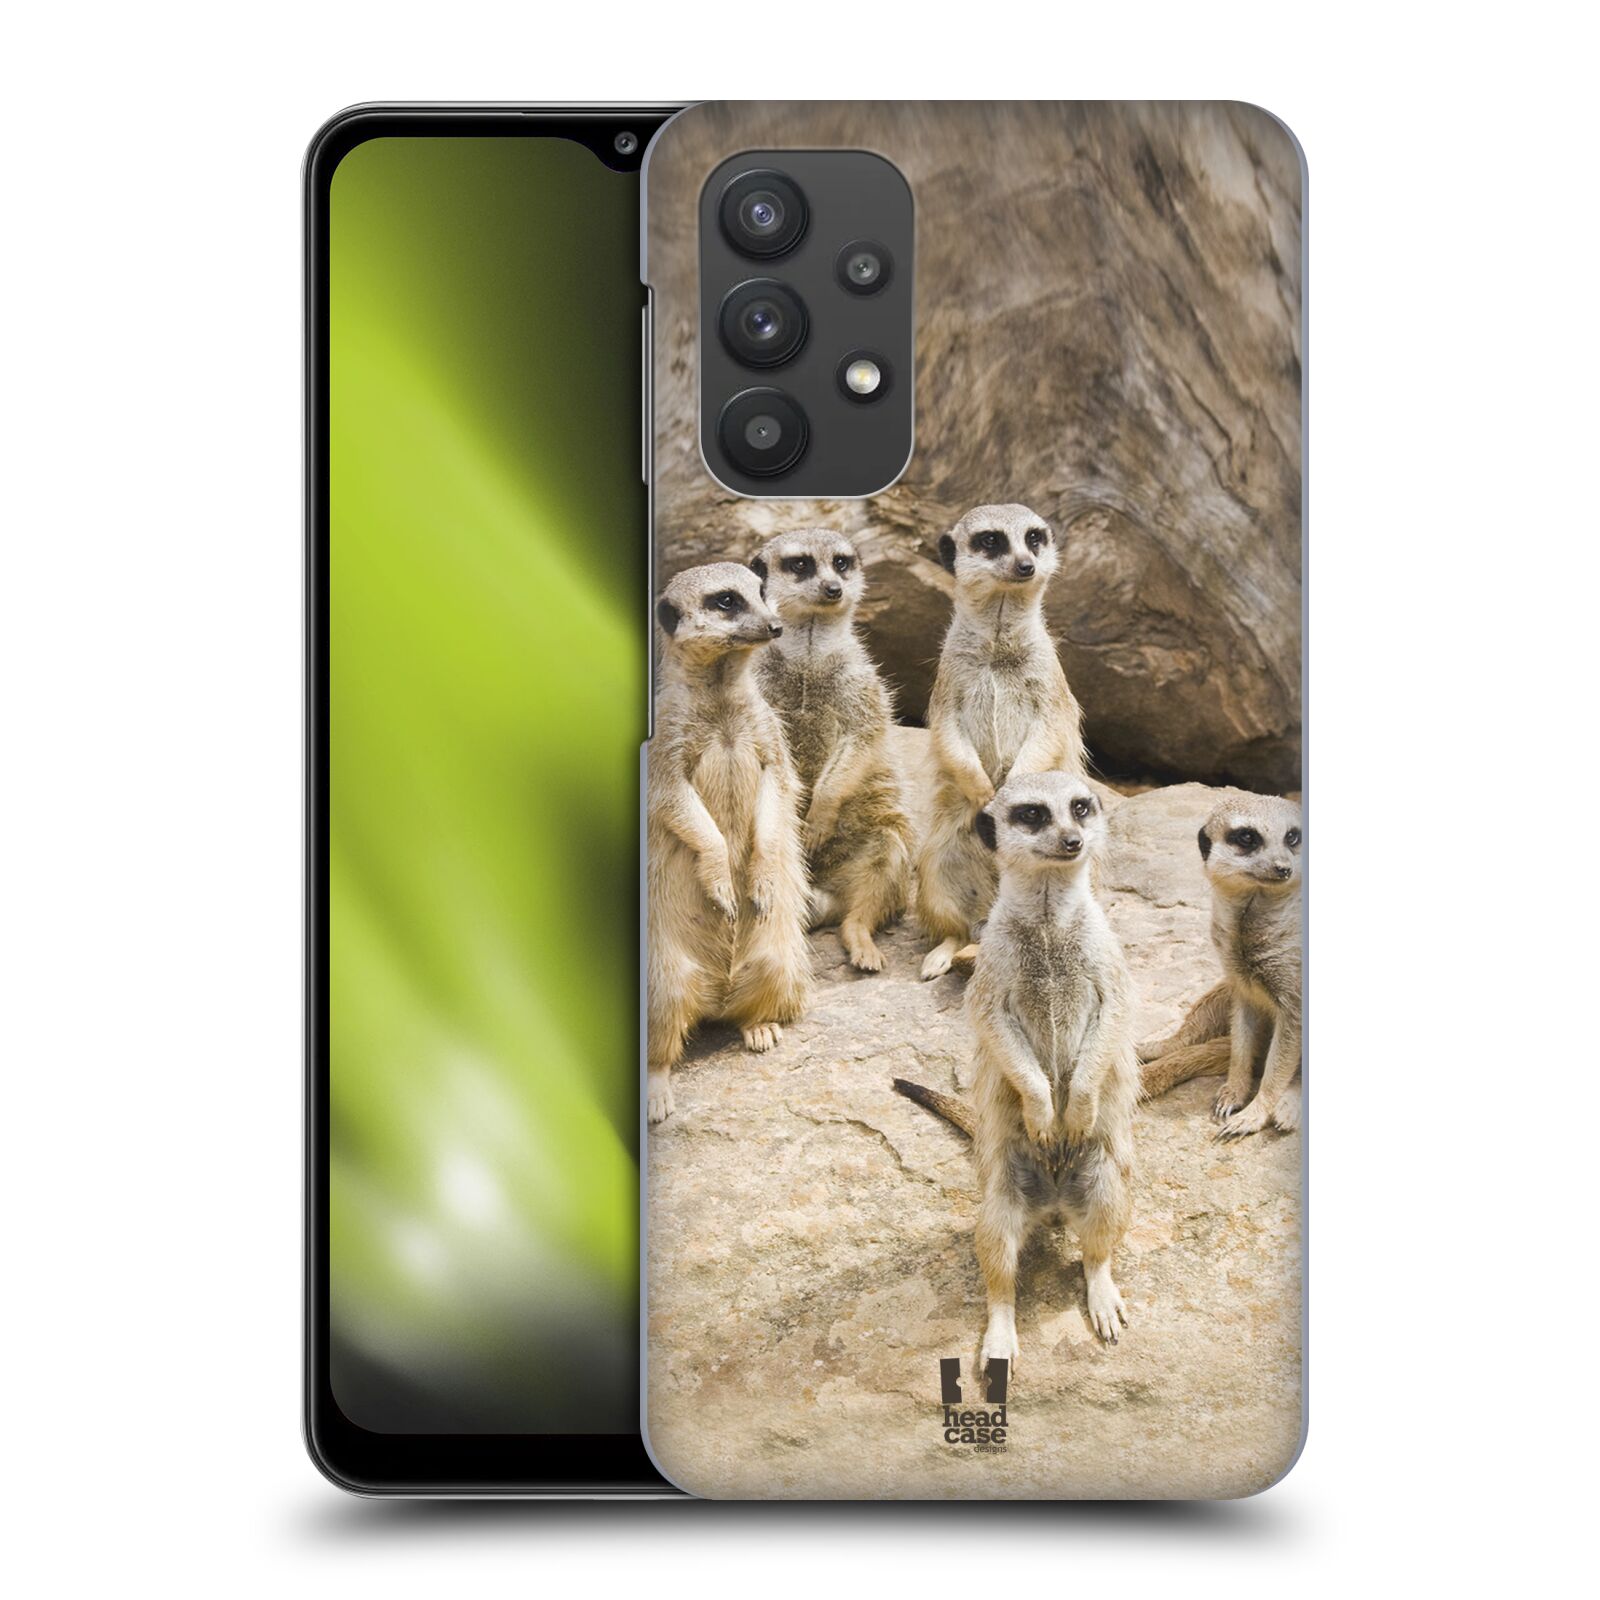 Zadní obal pro mobil Samsung Galaxy A32 5G - HEAD CASE - Svět zvířat roztomilé surikaty